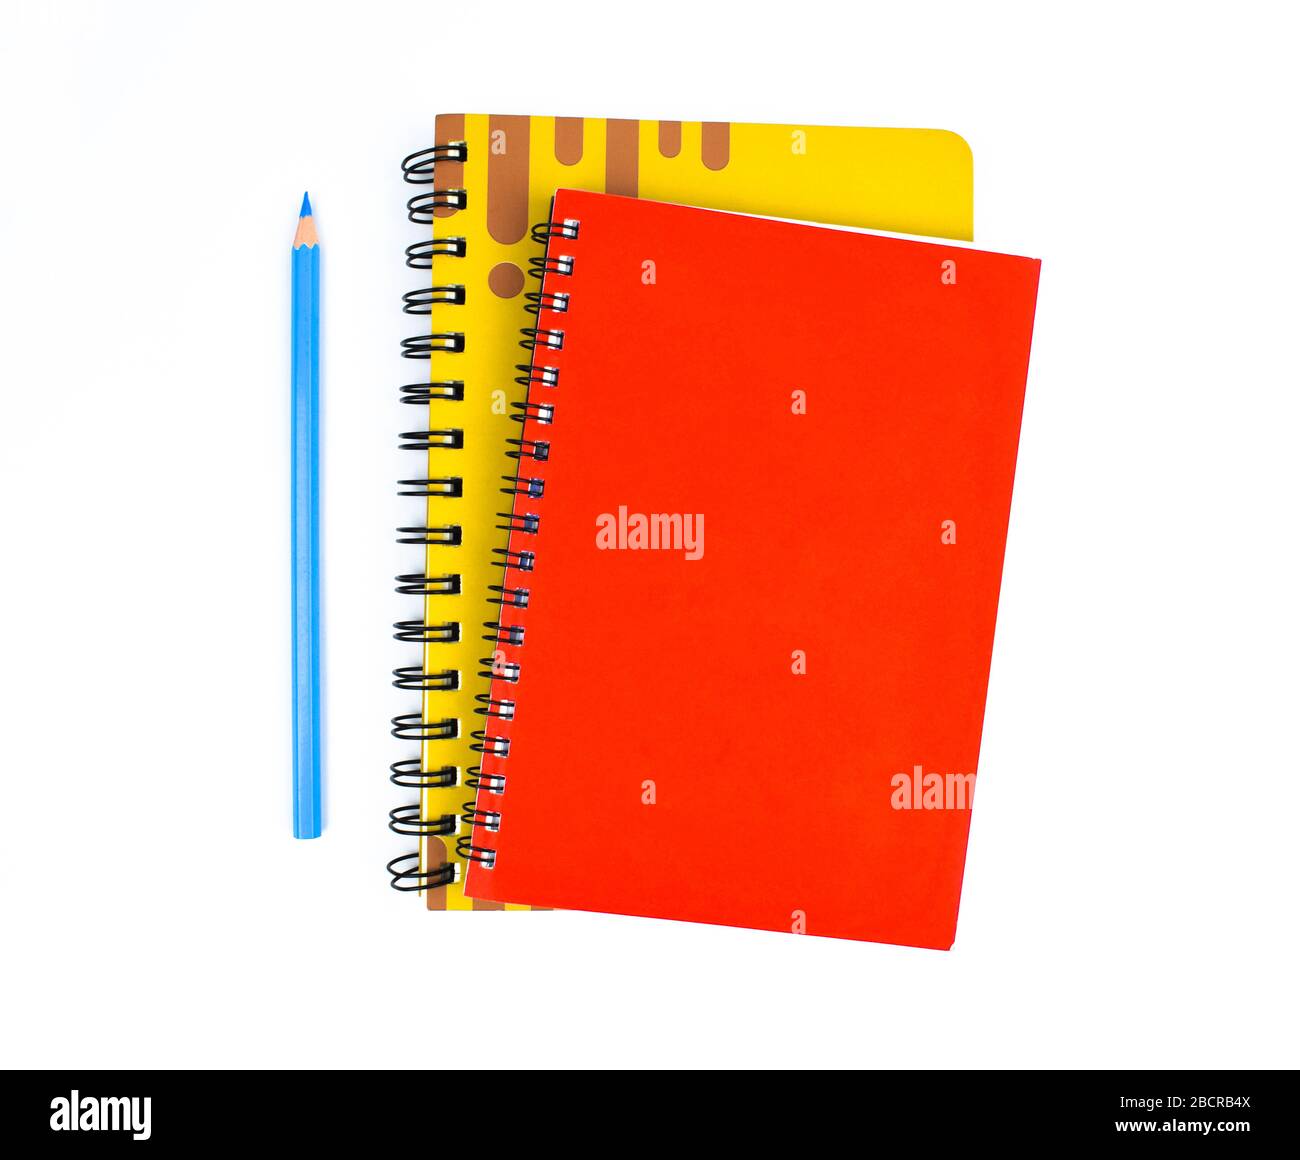 due diari di colore rosso e giallo si trovano accanto ad una matita di colore azzurro su uno sfondo bianco Foto Stock